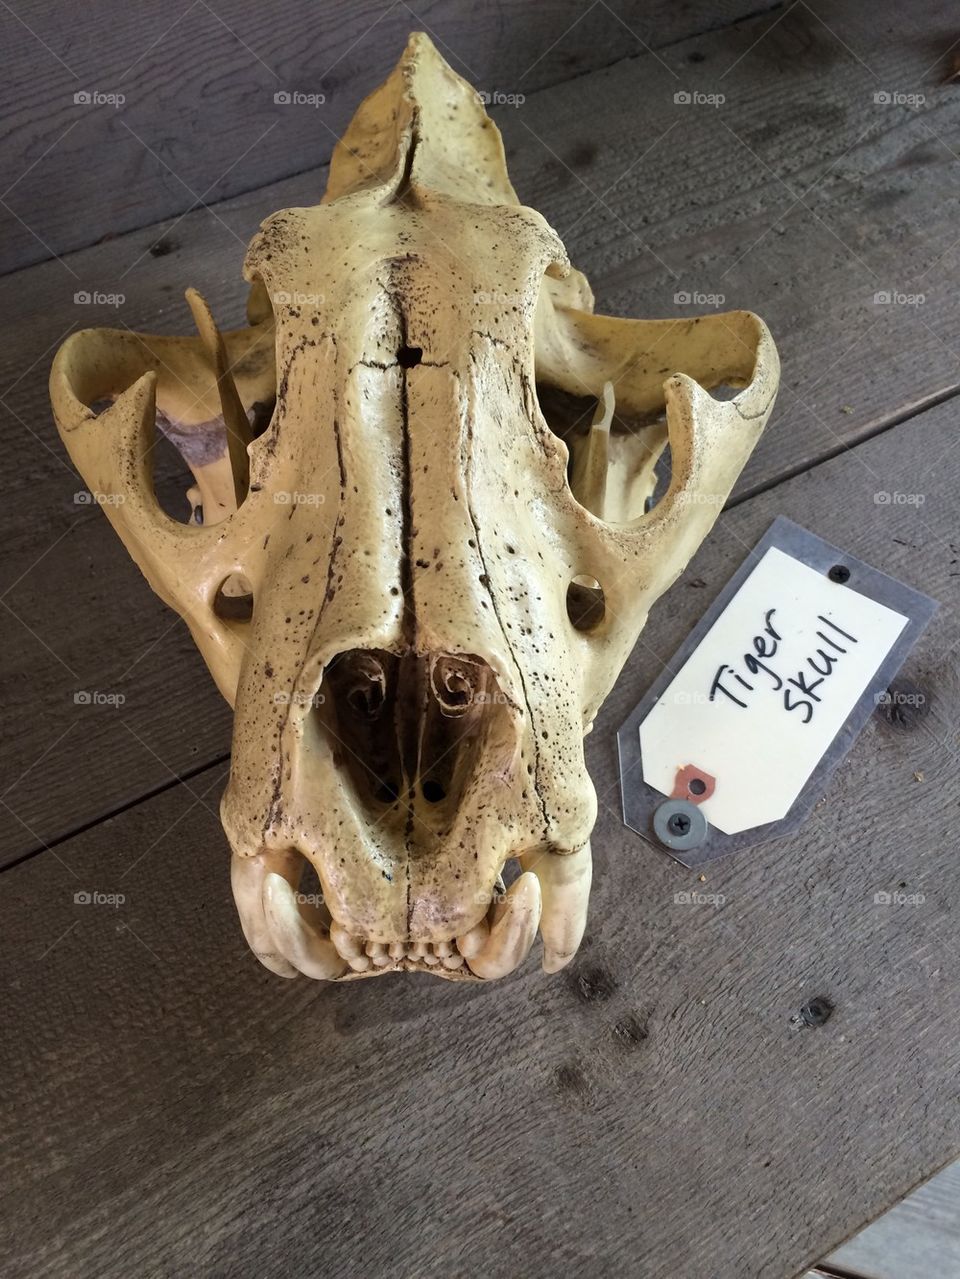 Tiger skull